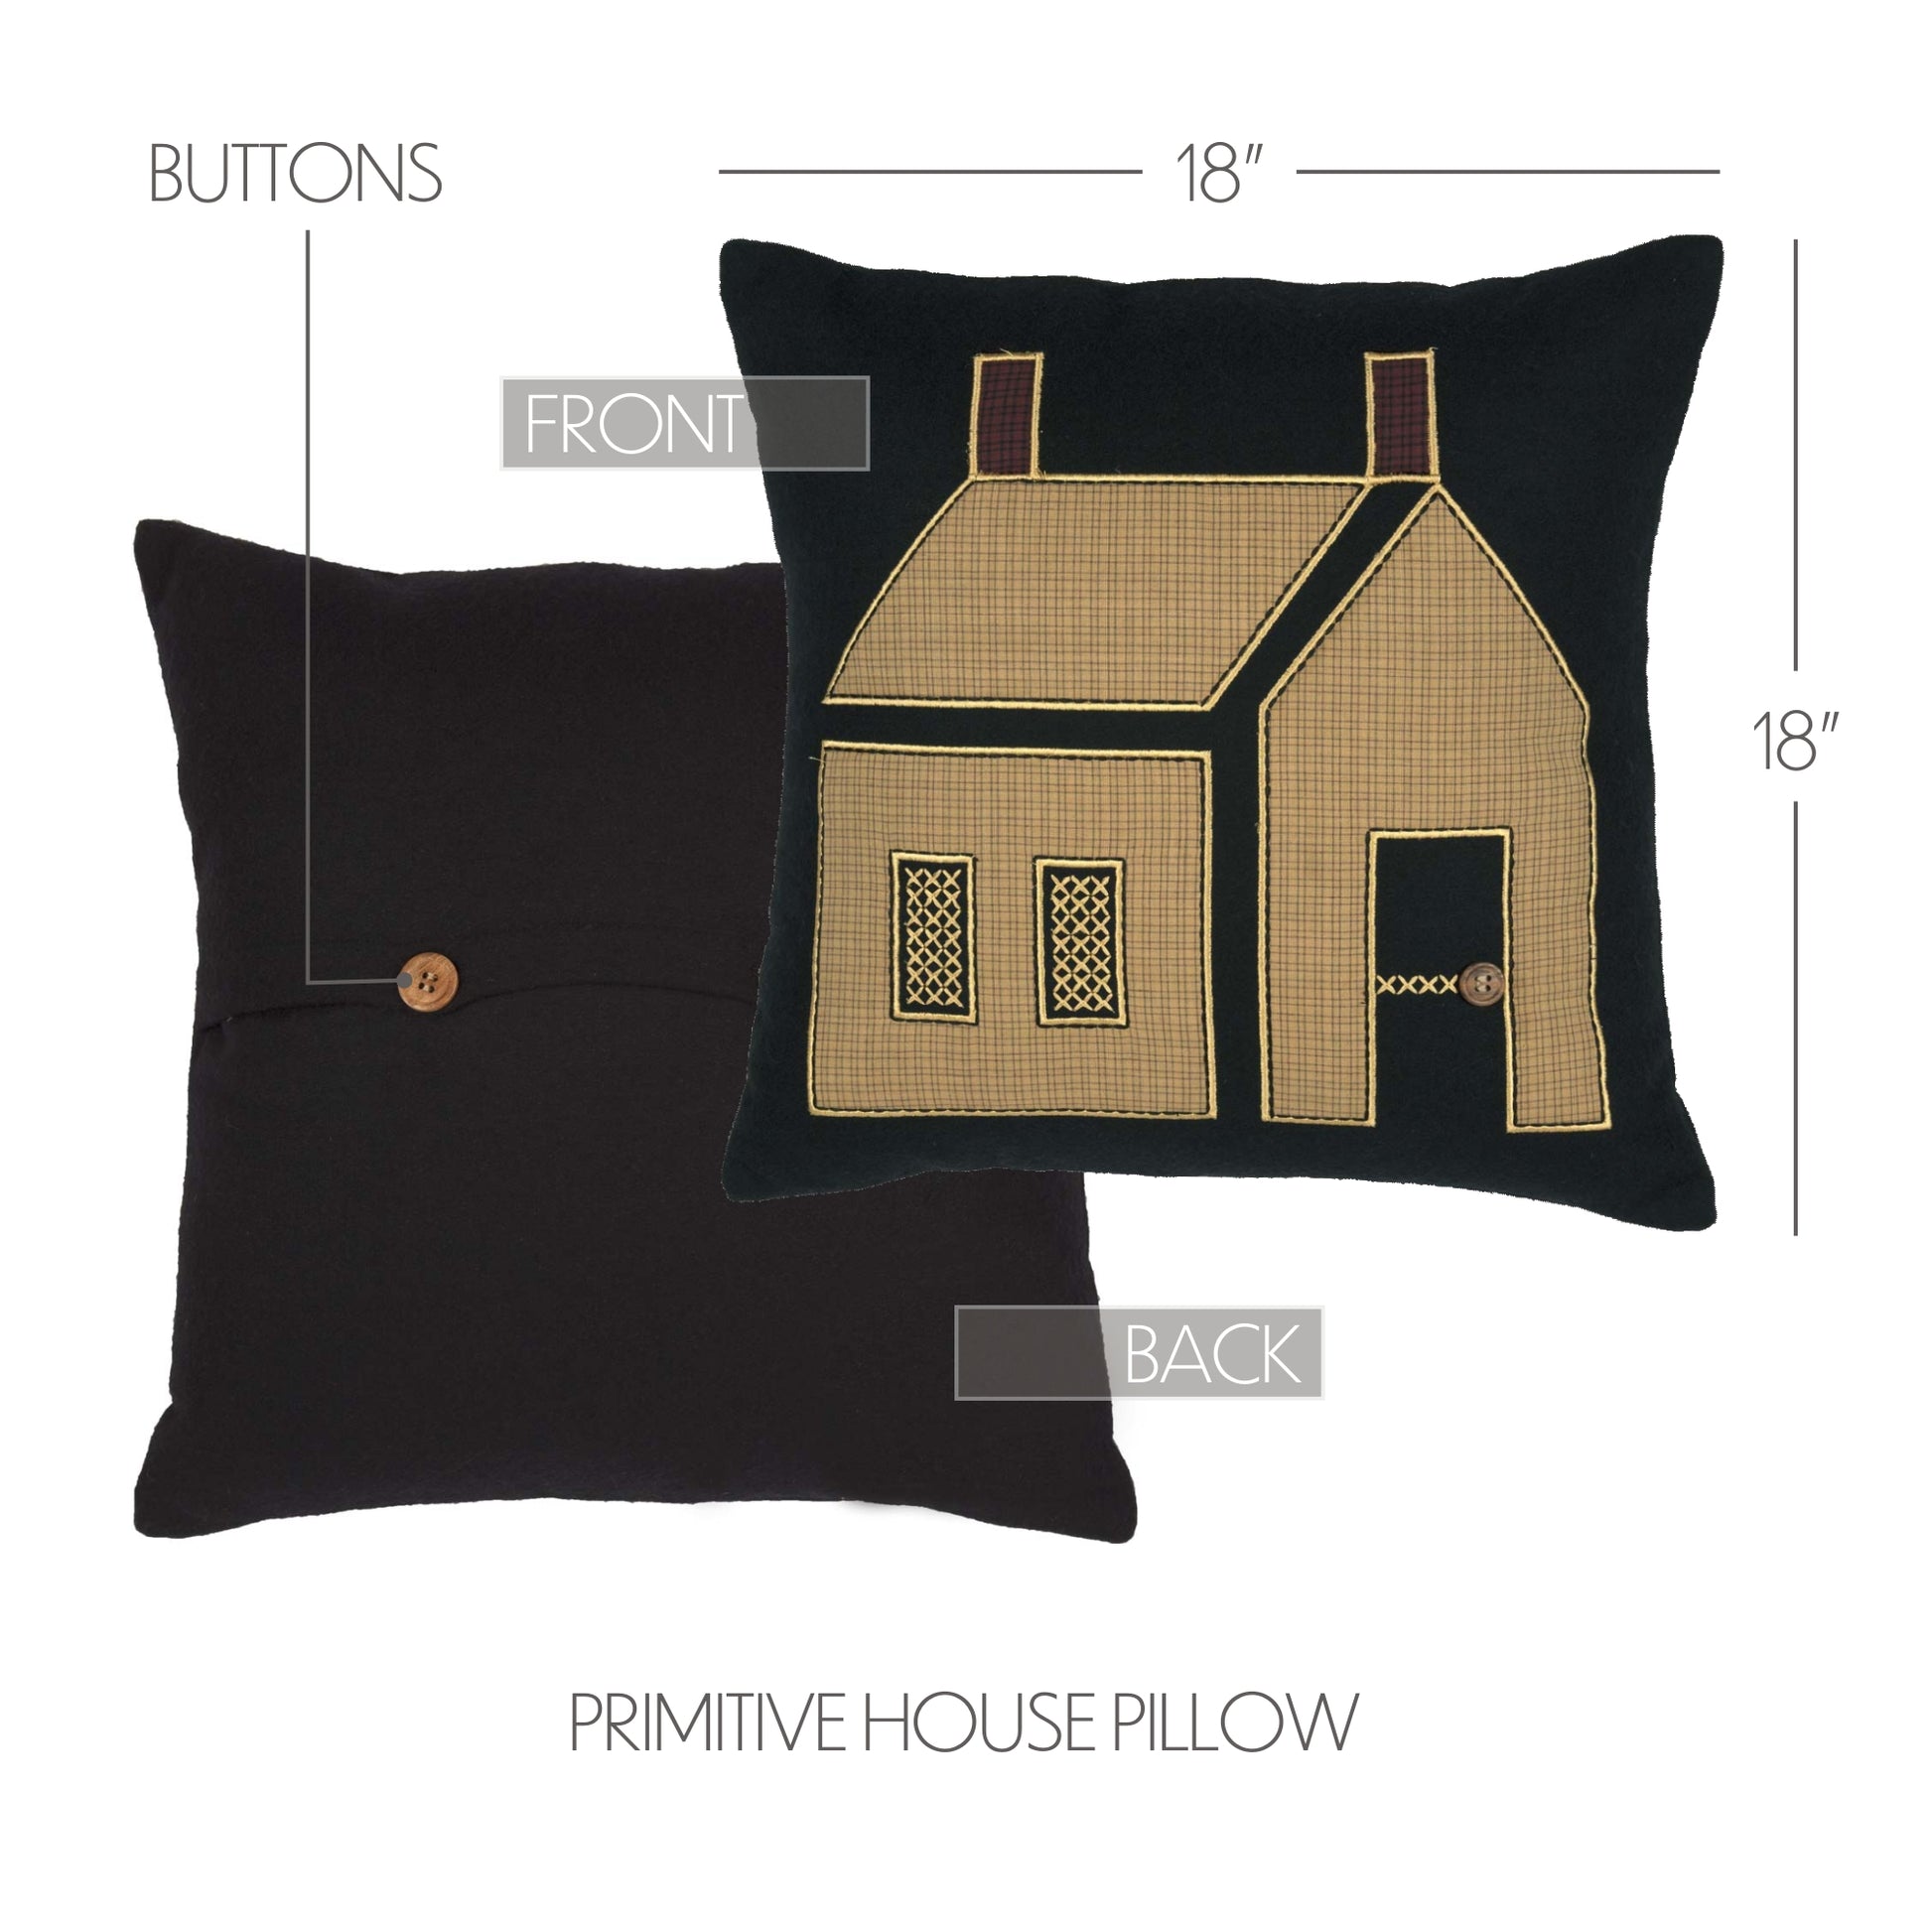 Primitive House Pillow 18x18